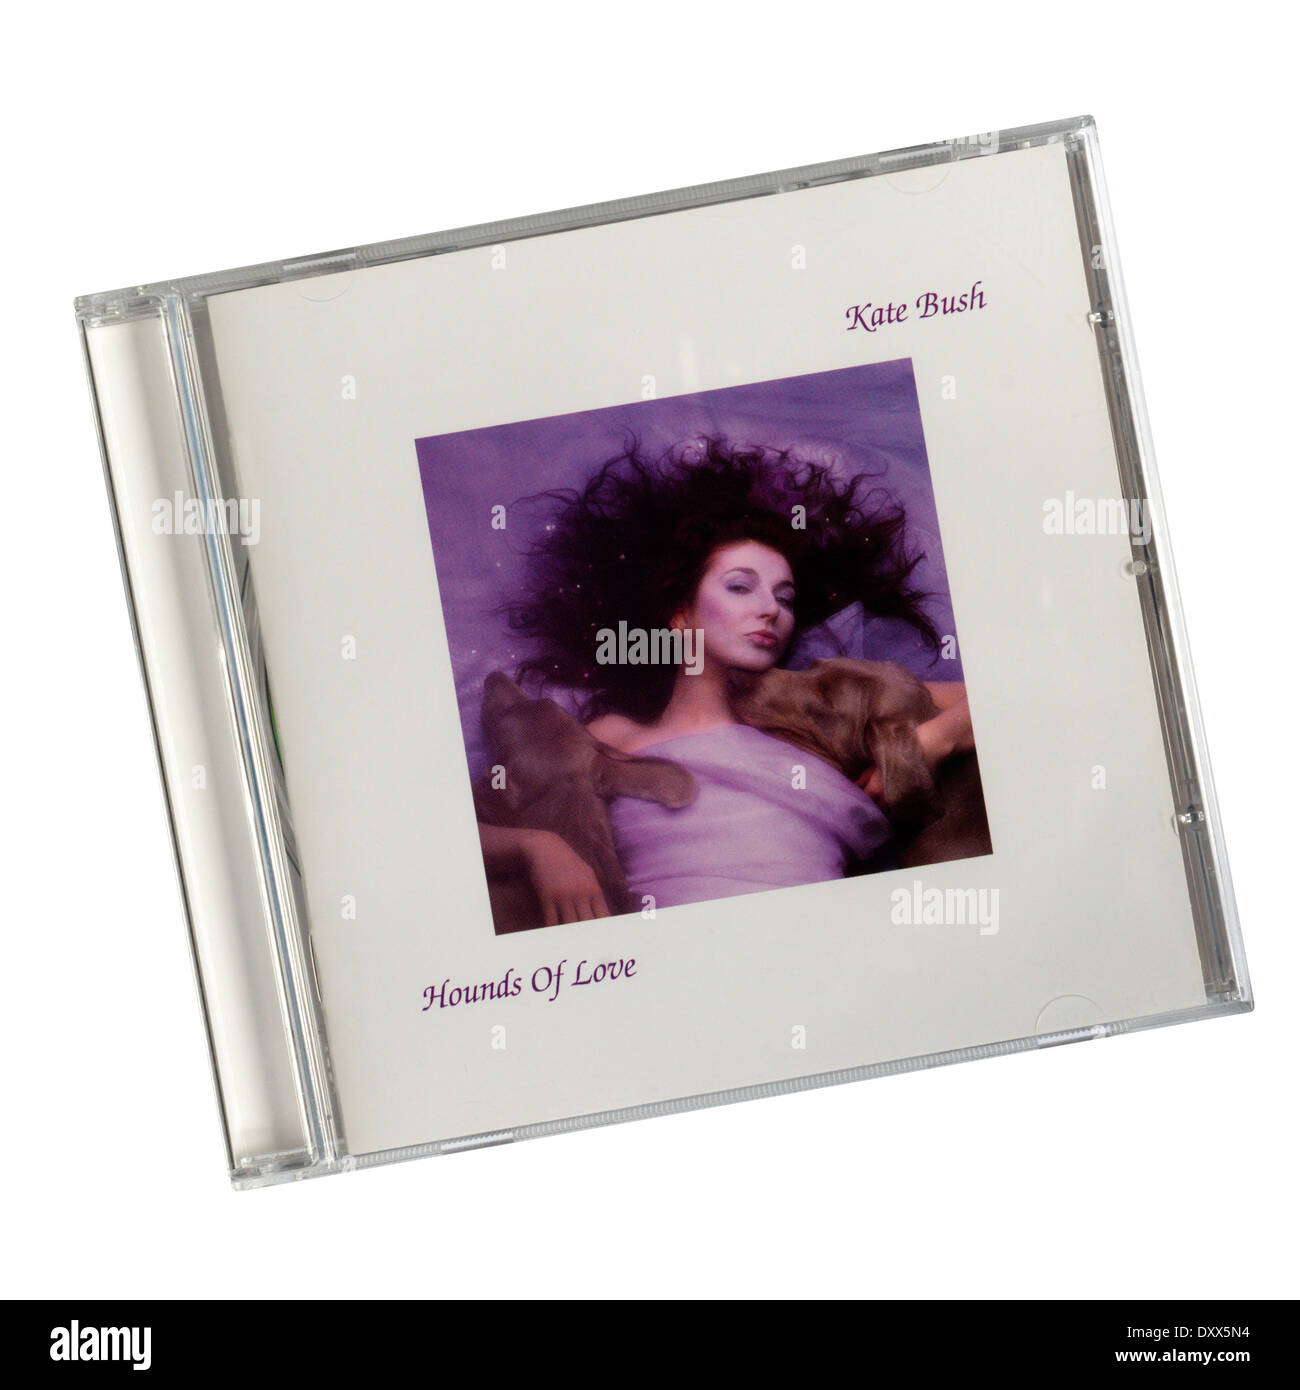 Hounds of Love war das 5. Studioalbum der englischen Sängerin Kate Bush. Es wurde im Jahre 1985 veröffentlicht. Stockfoto